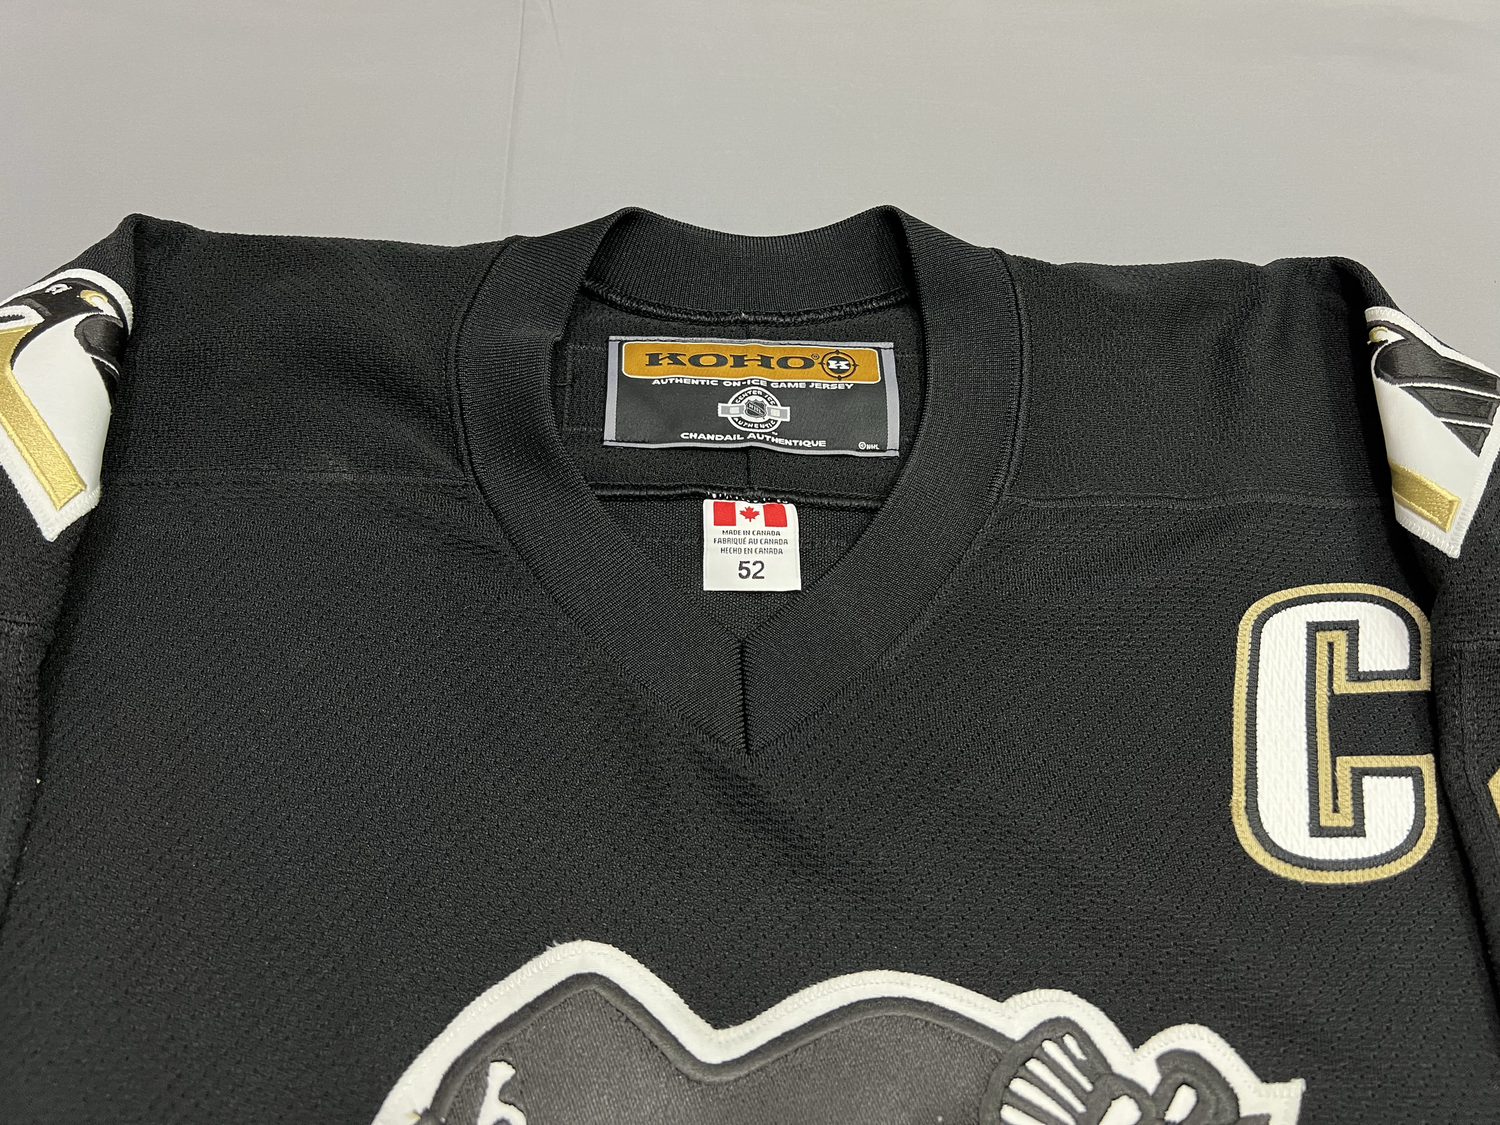 D.F.S. Hockey jersey (limited edition ) · DFS Streetwear · Online